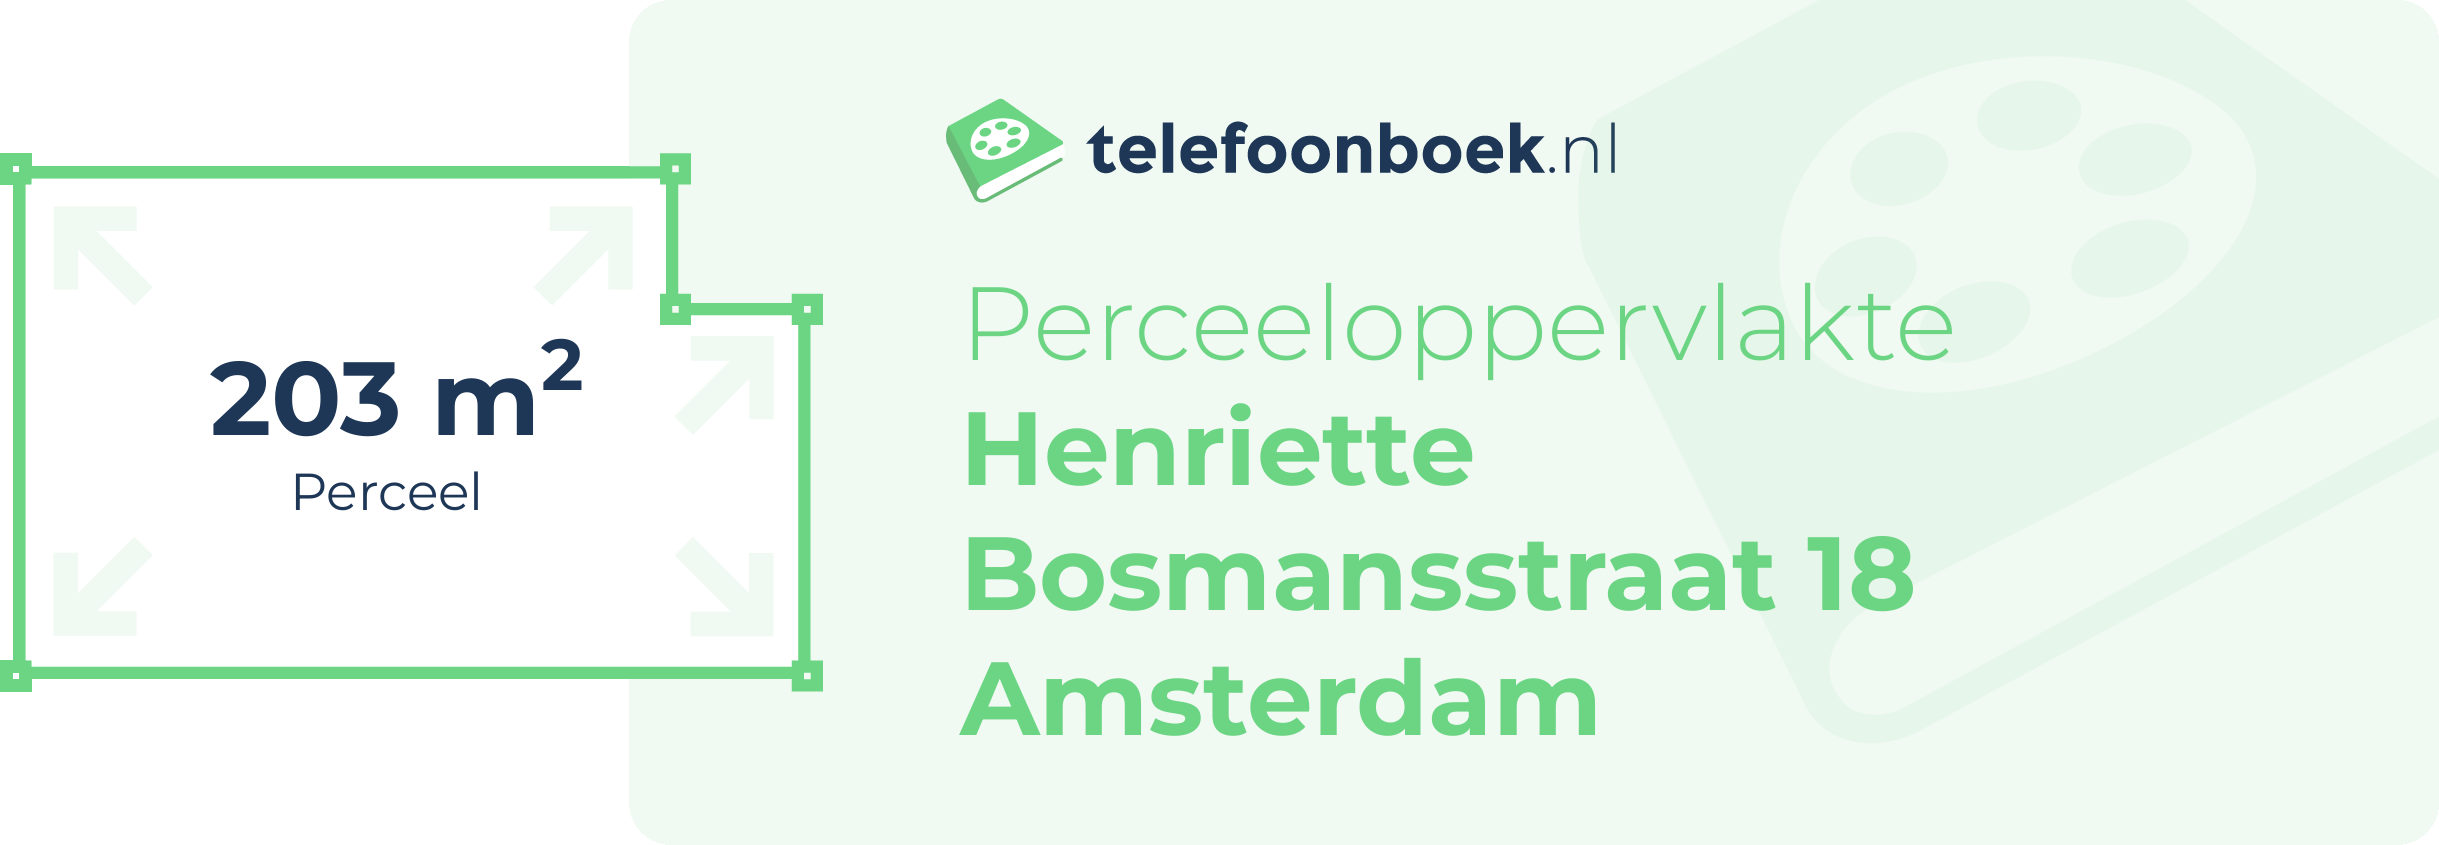 Perceeloppervlakte Henriette Bosmansstraat 18 Amsterdam